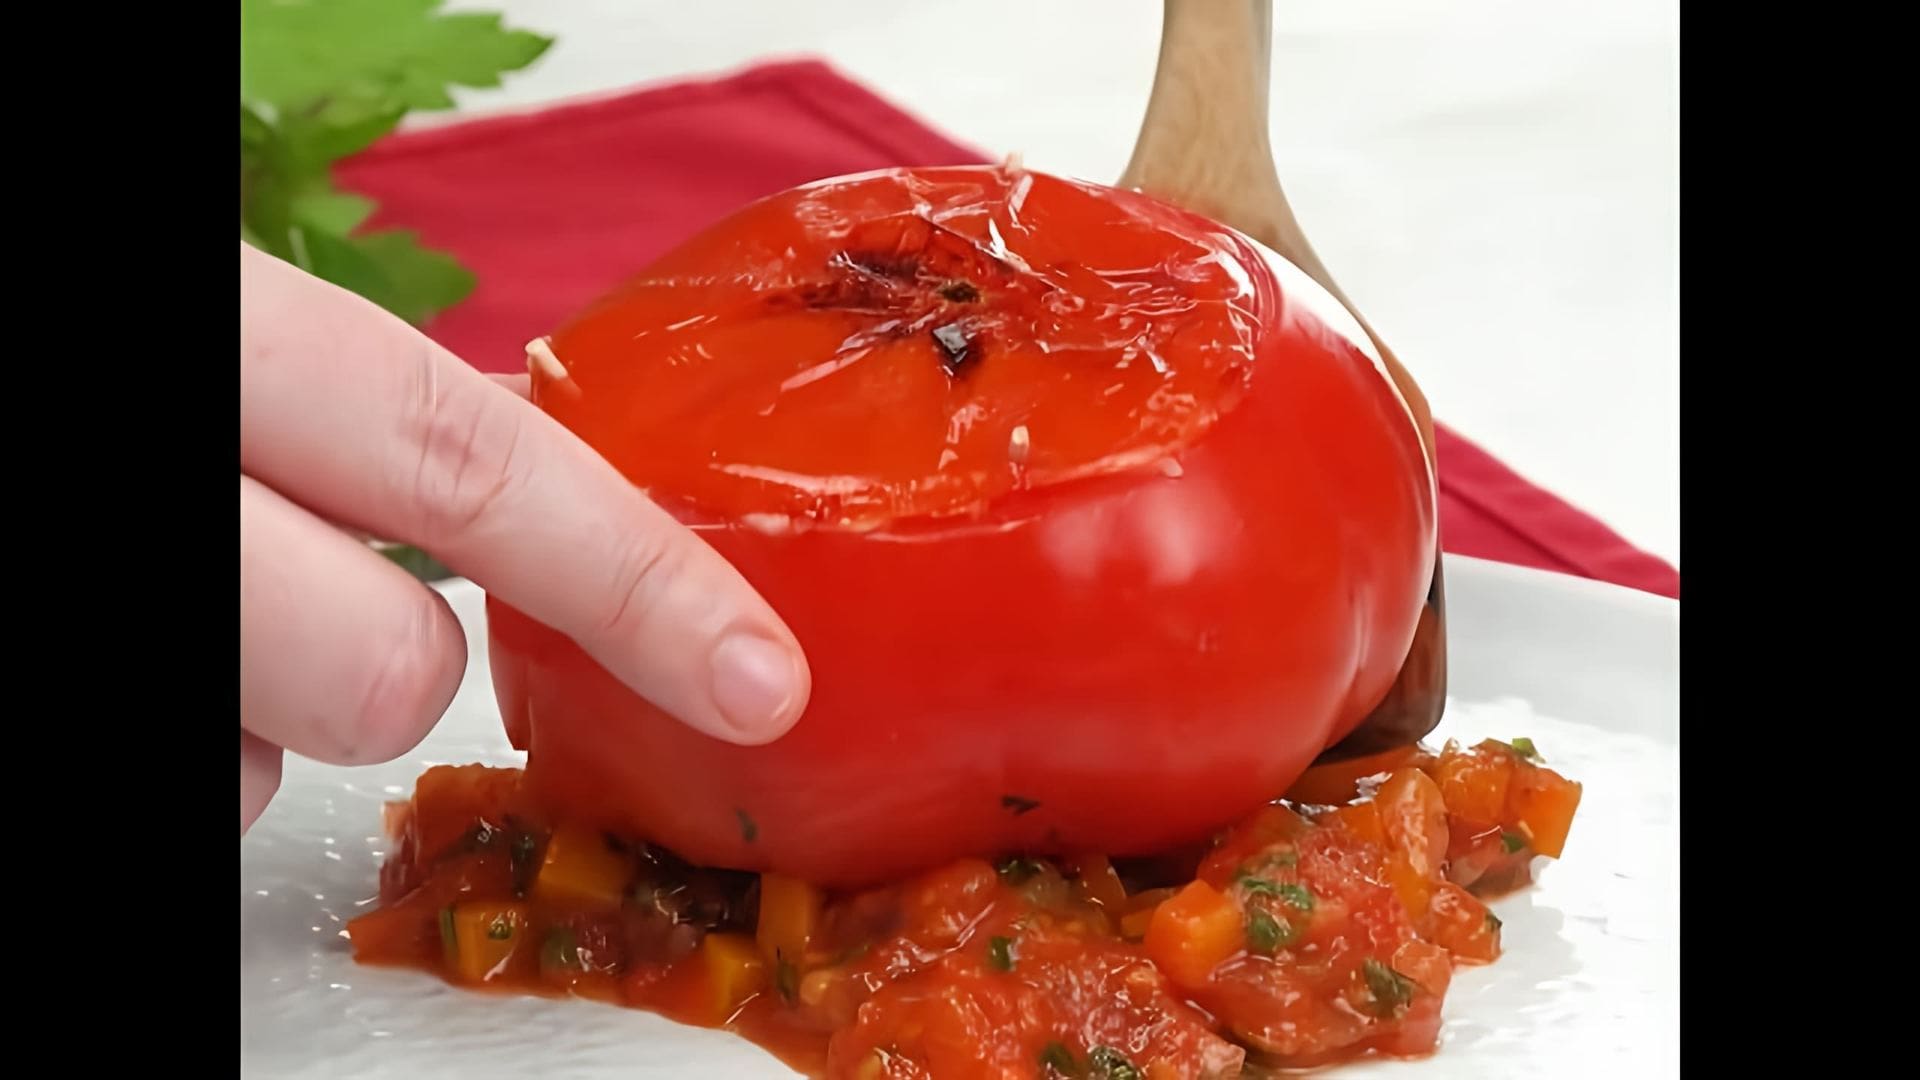 Фаршированные помидоры на сковороде - это вкусное и простое блюдо, которое можно приготовить в домашних условиях